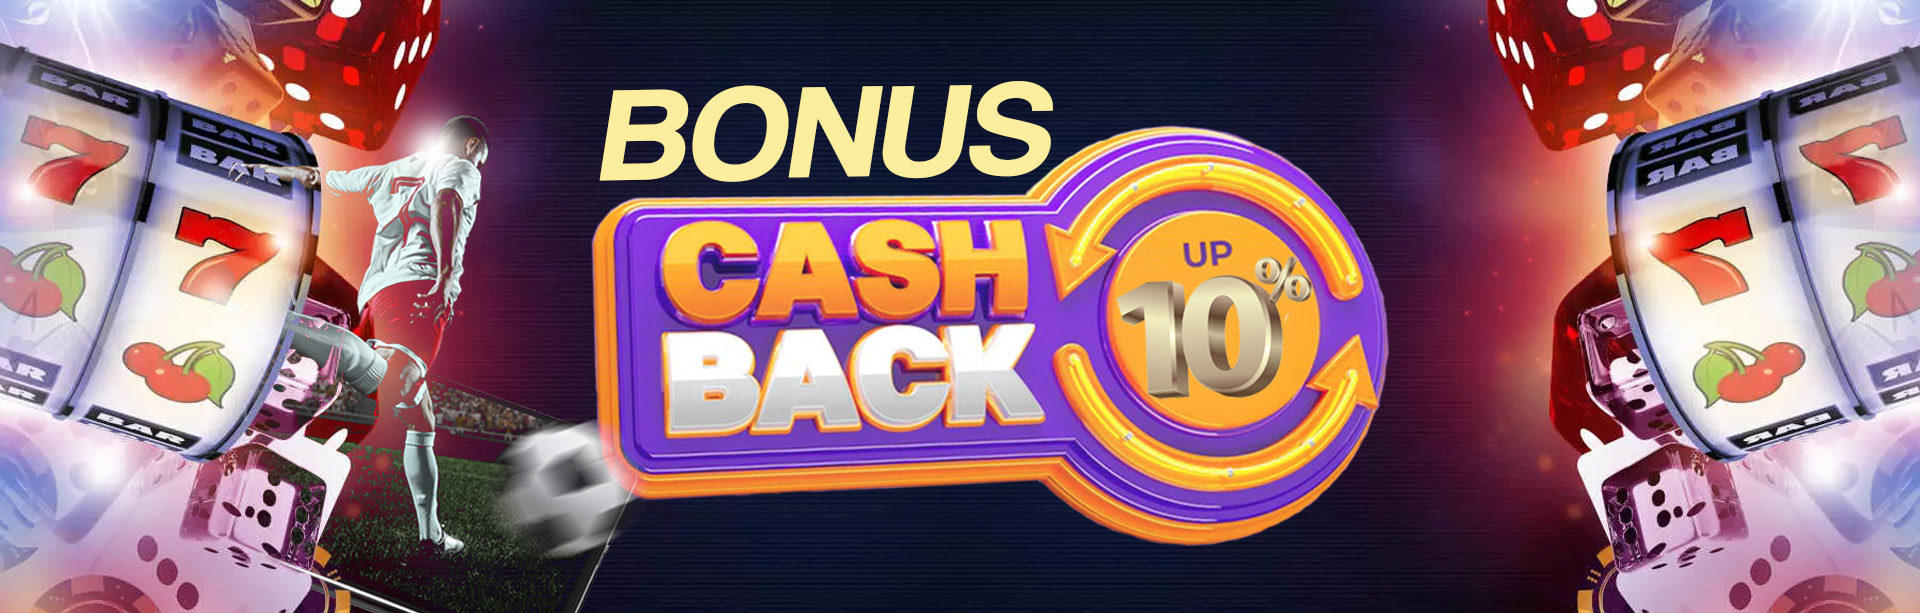 Bonus Cashback Bola